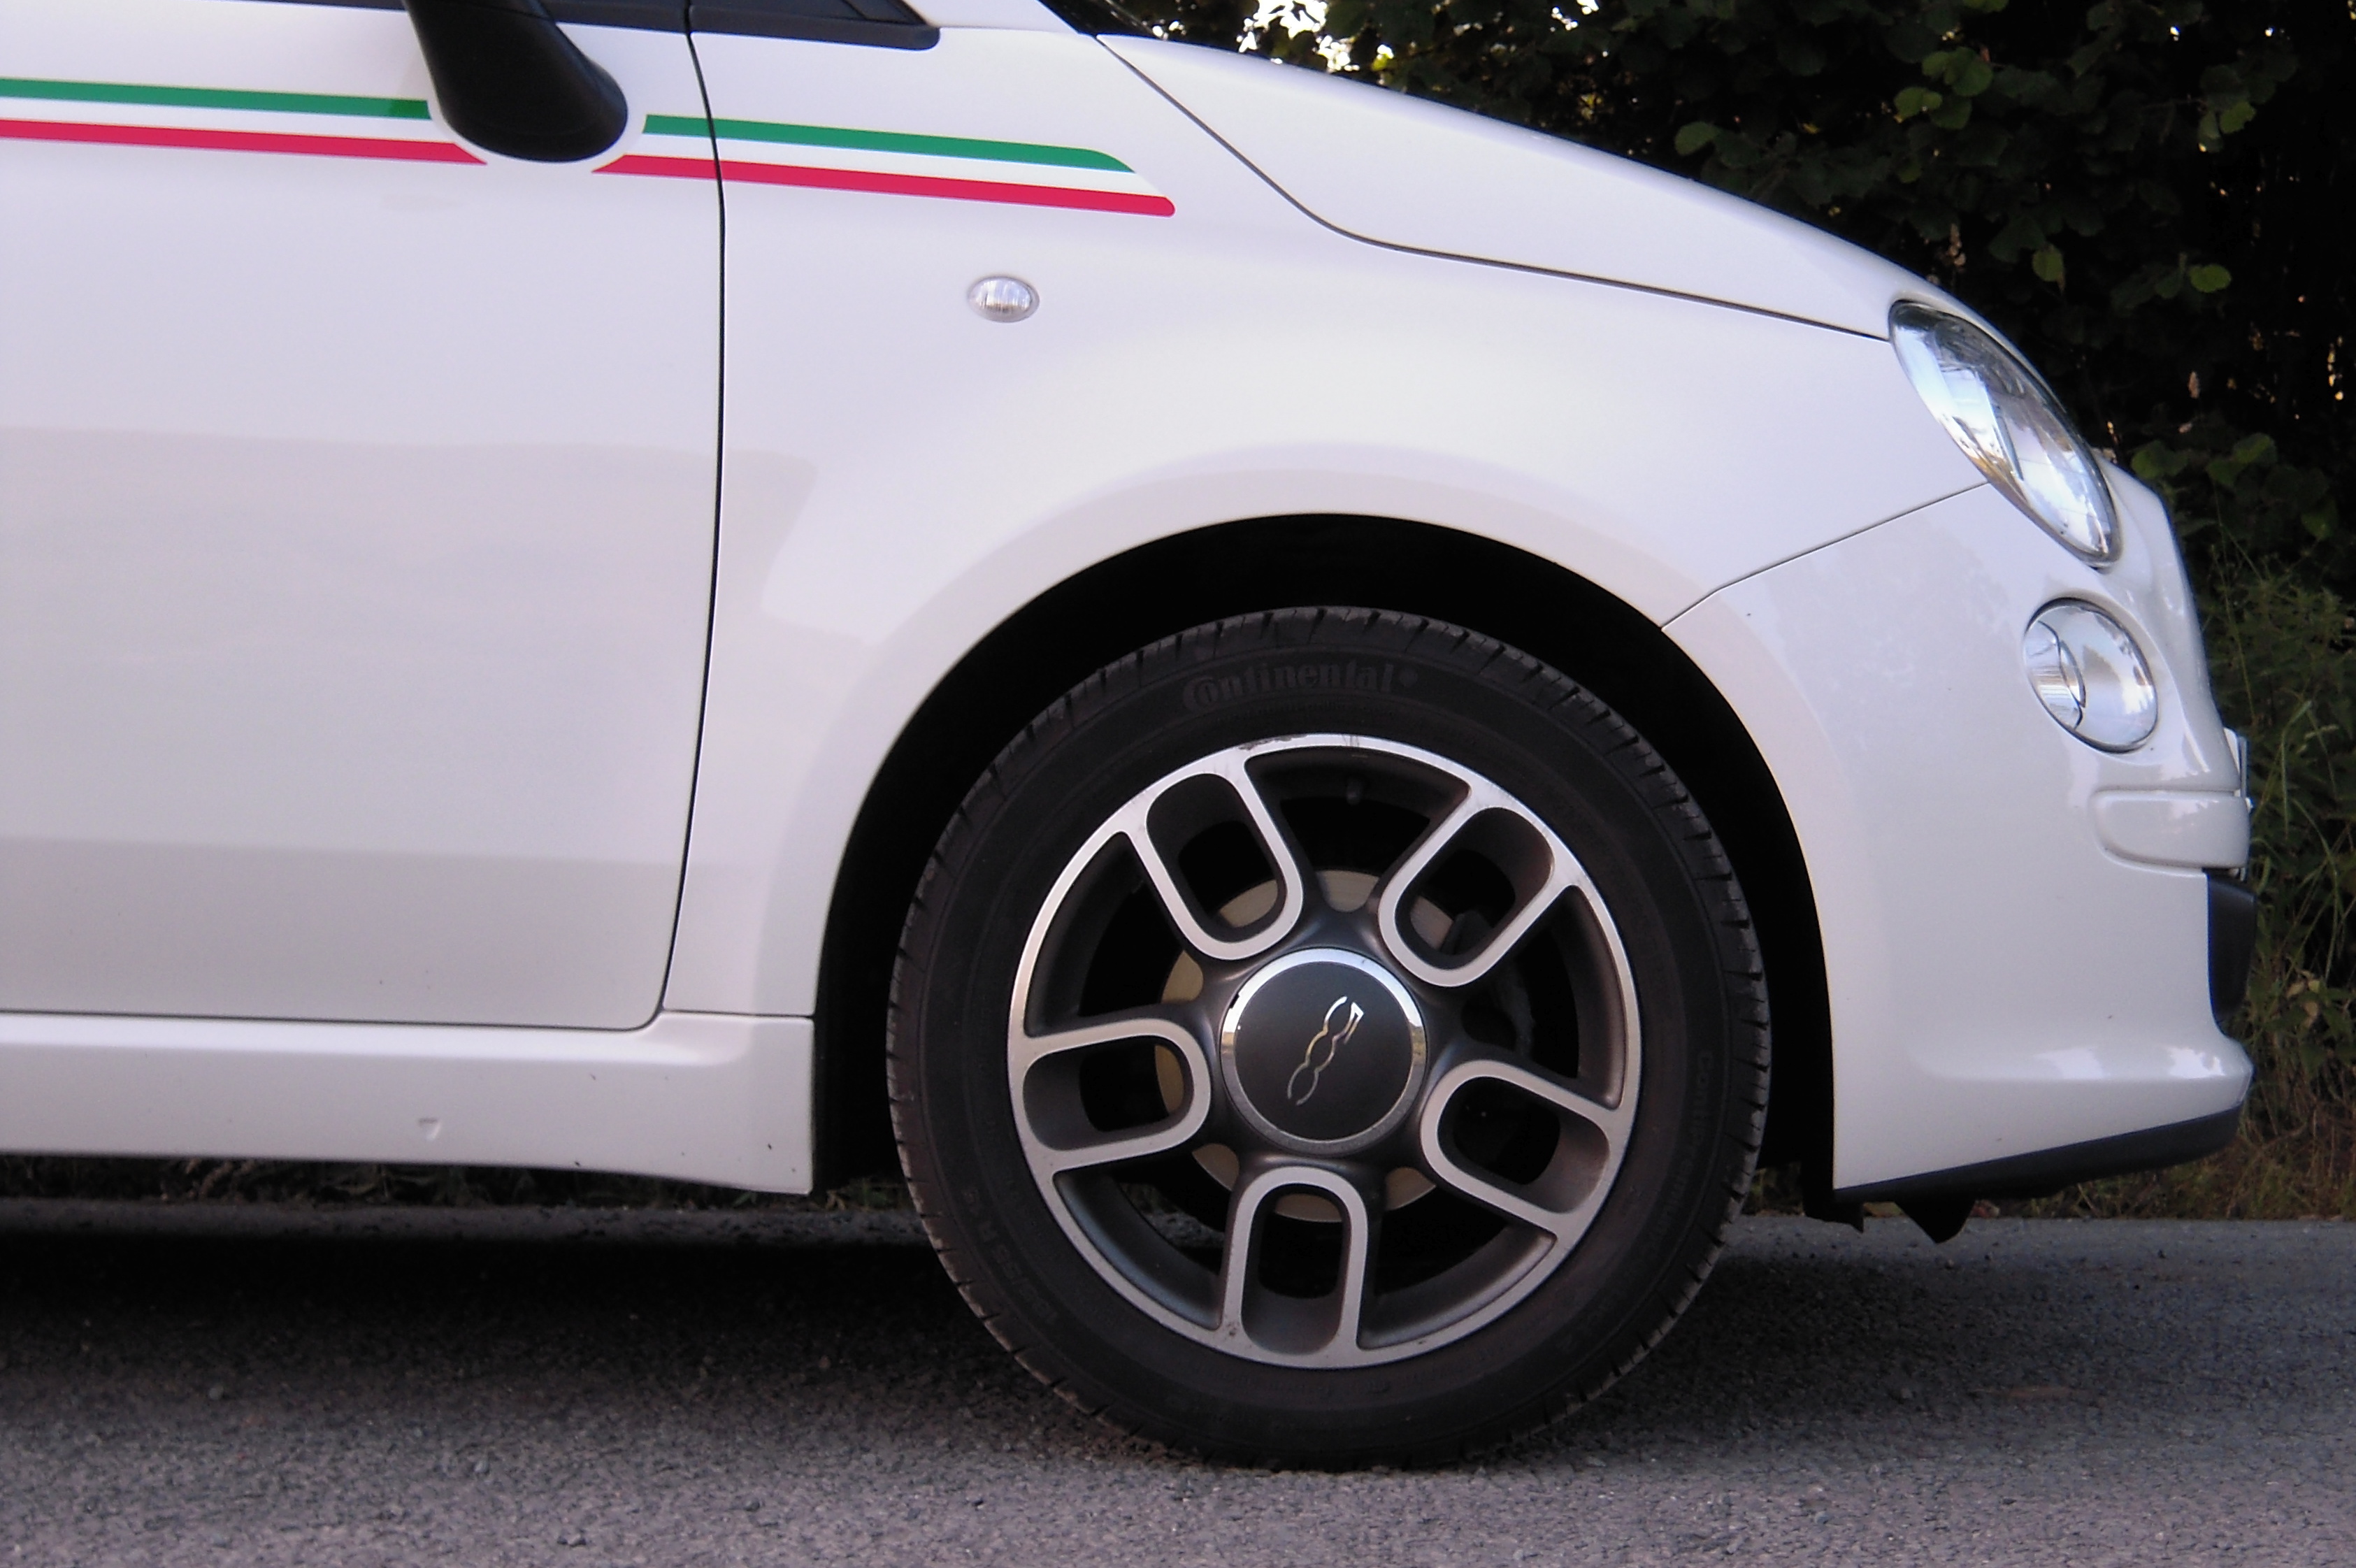 Fiat 500 2-tone wheels